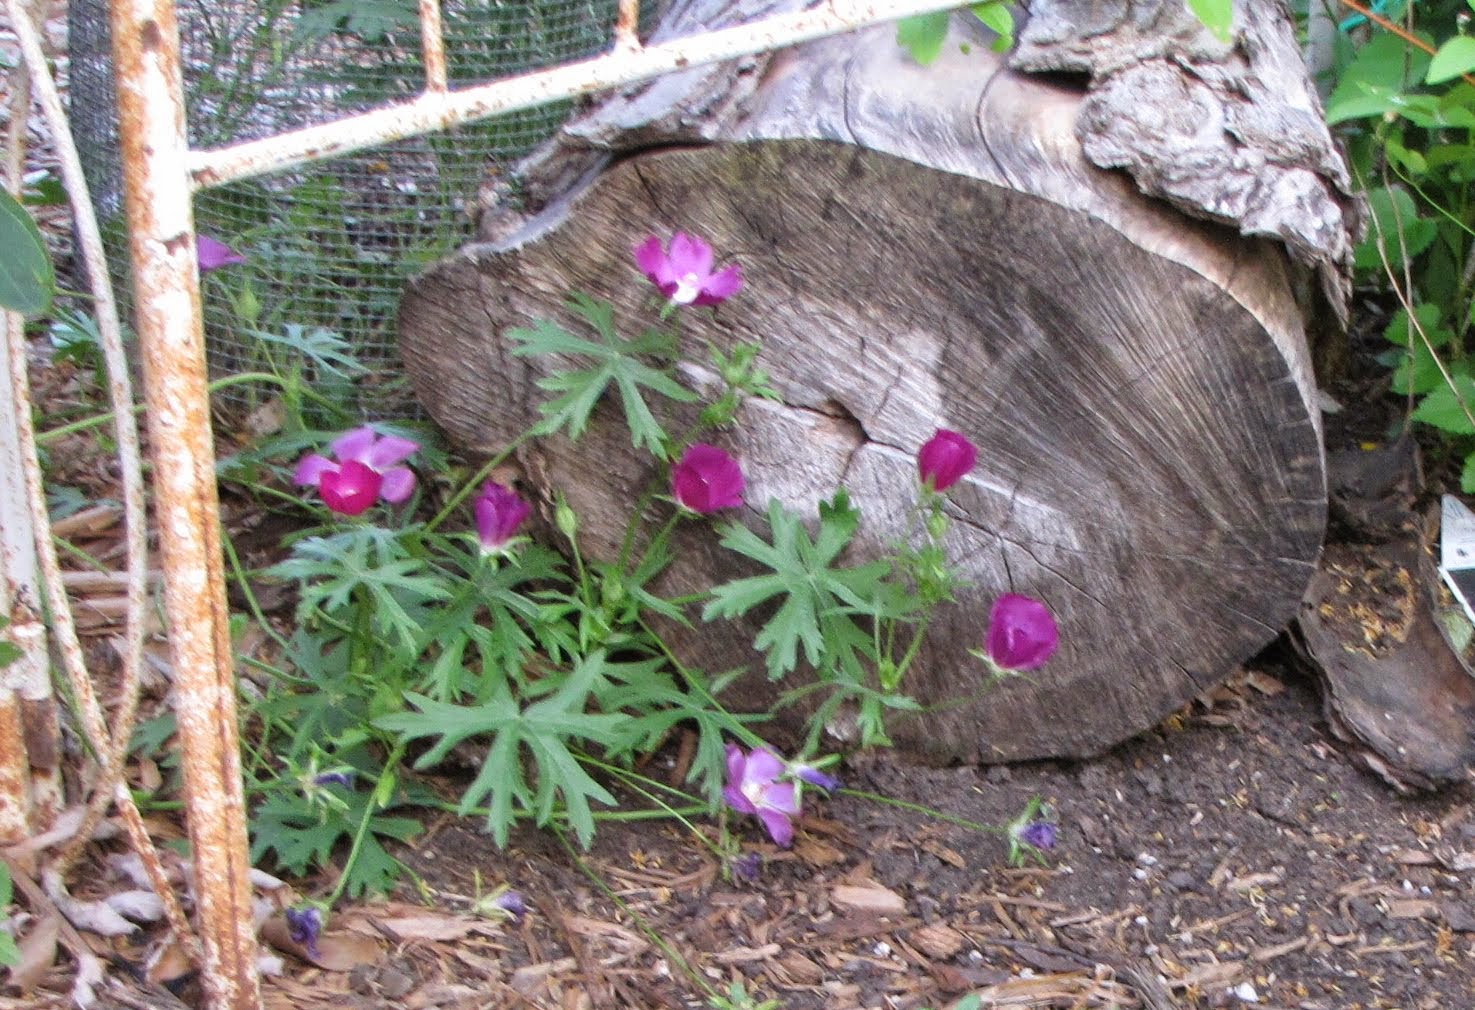 Purple poppy mallow